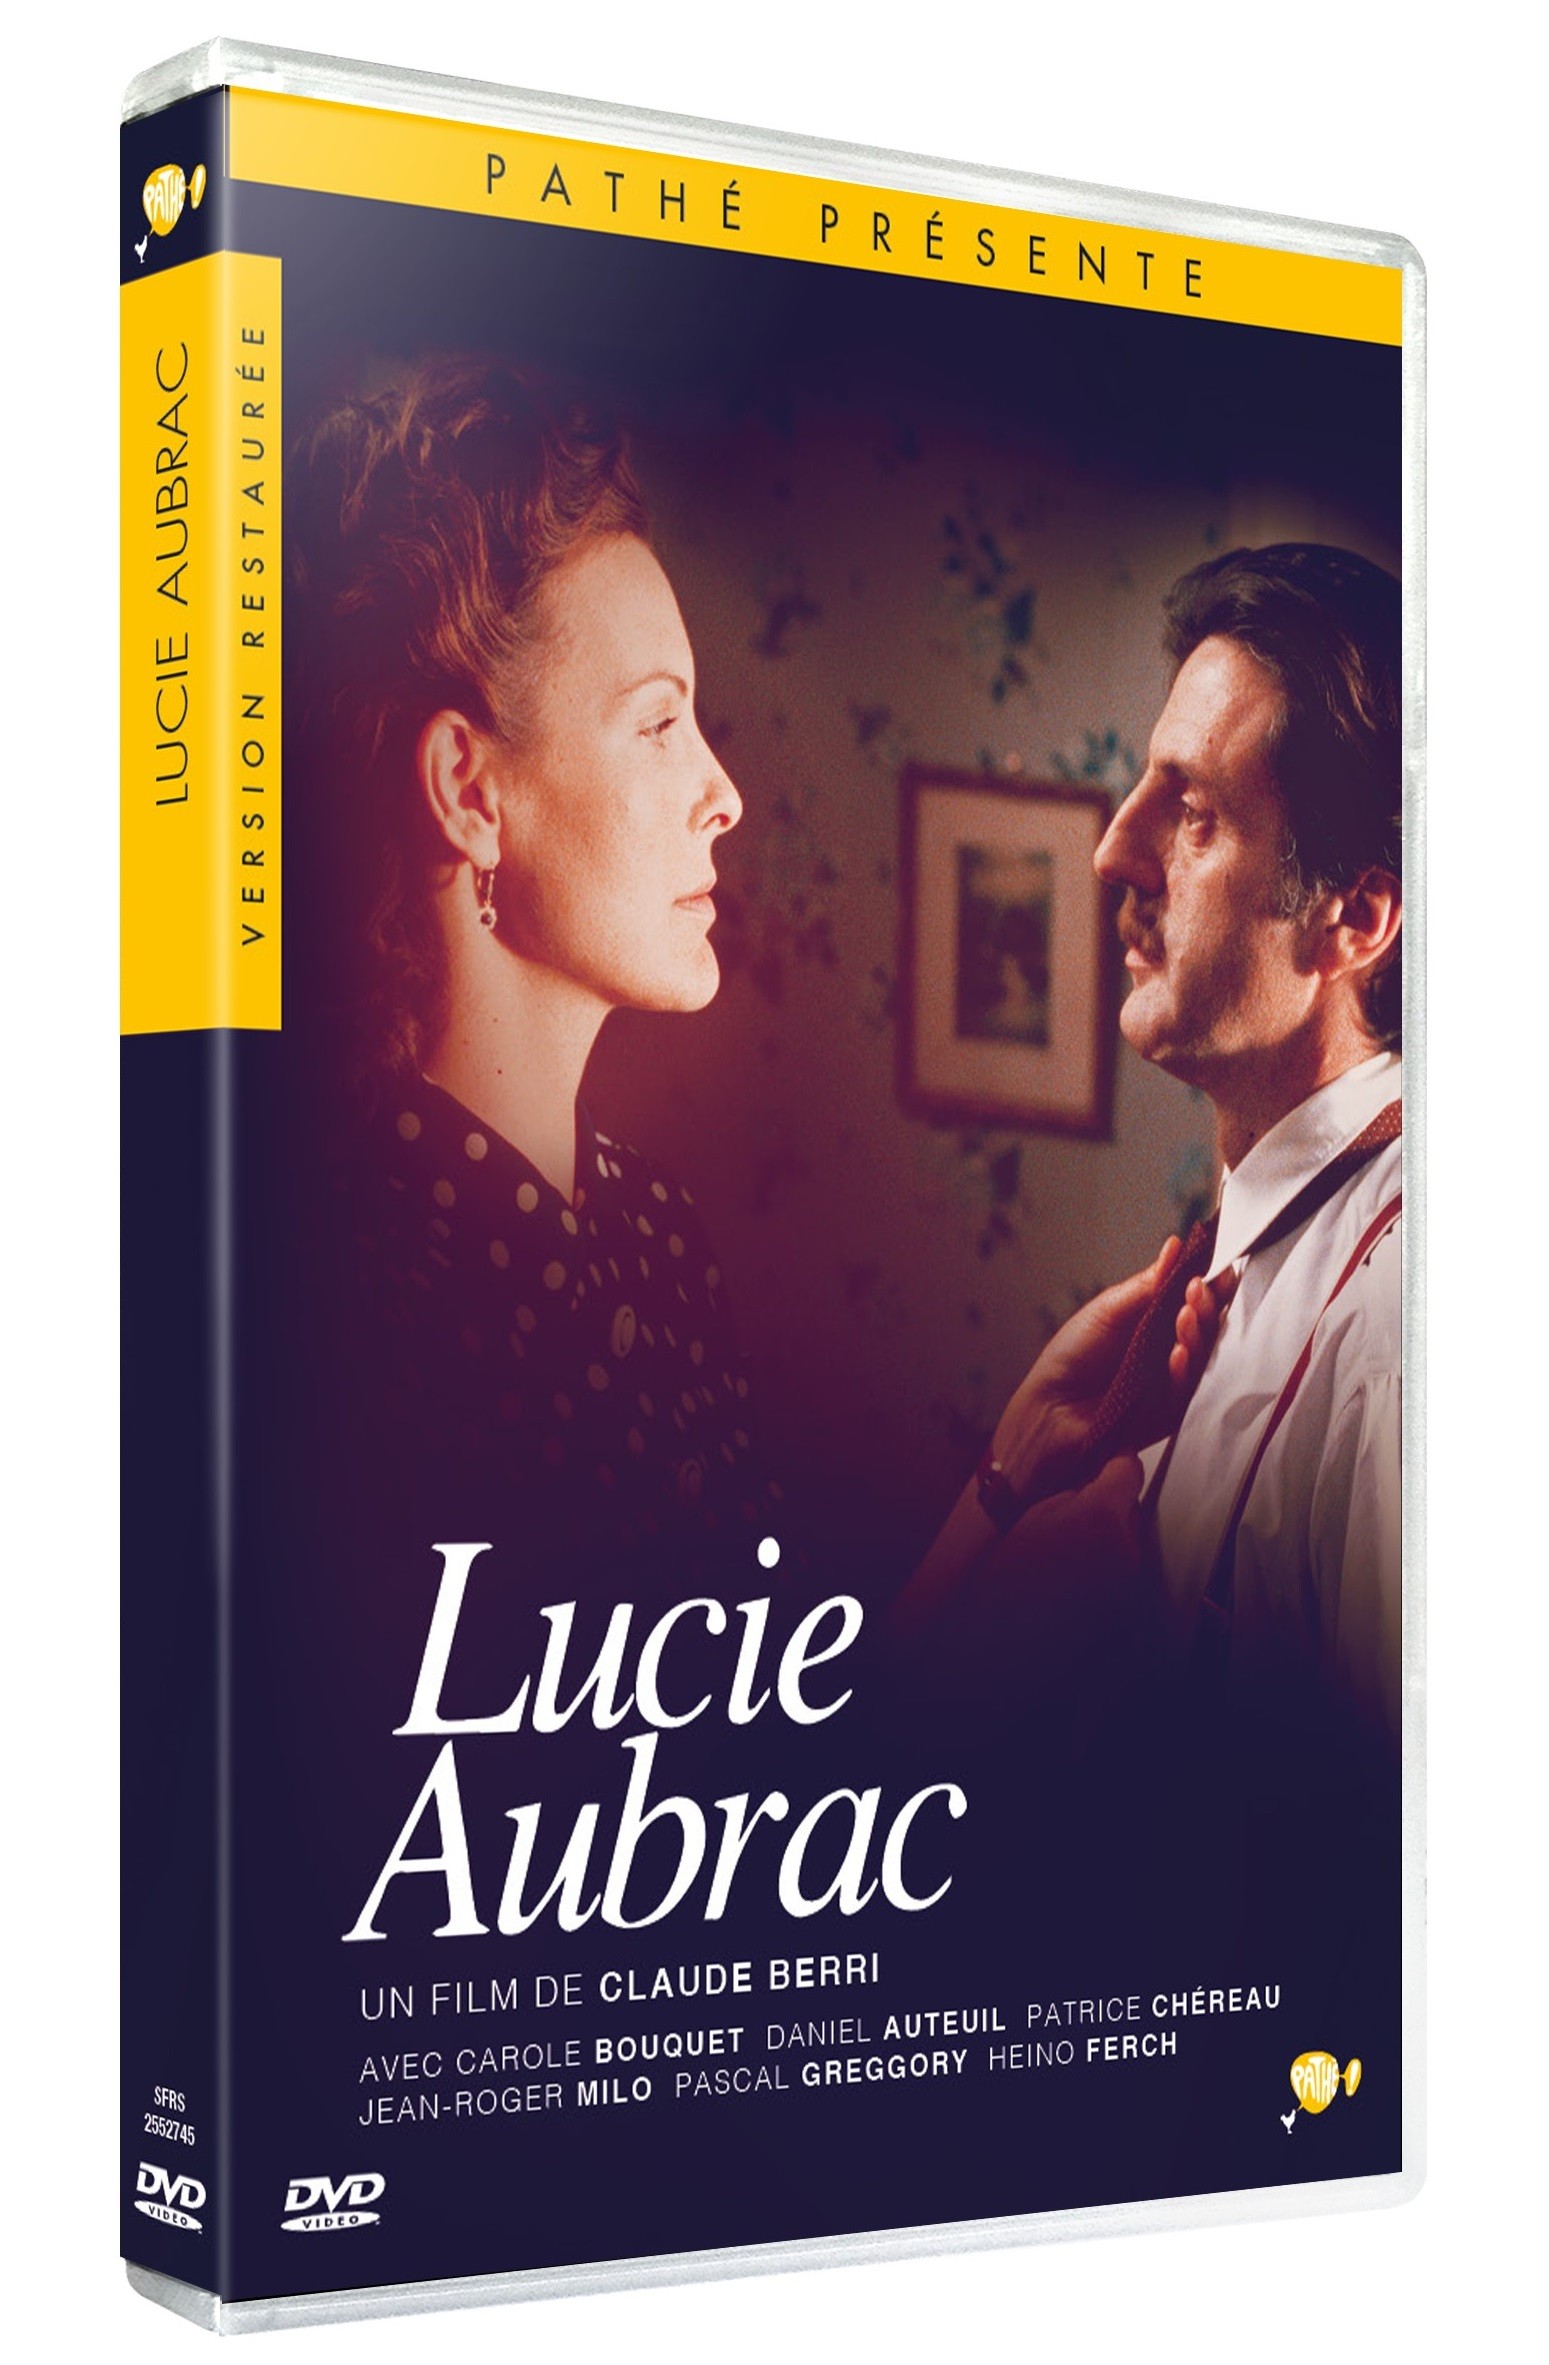 LUCIE AUBRAC - DVD